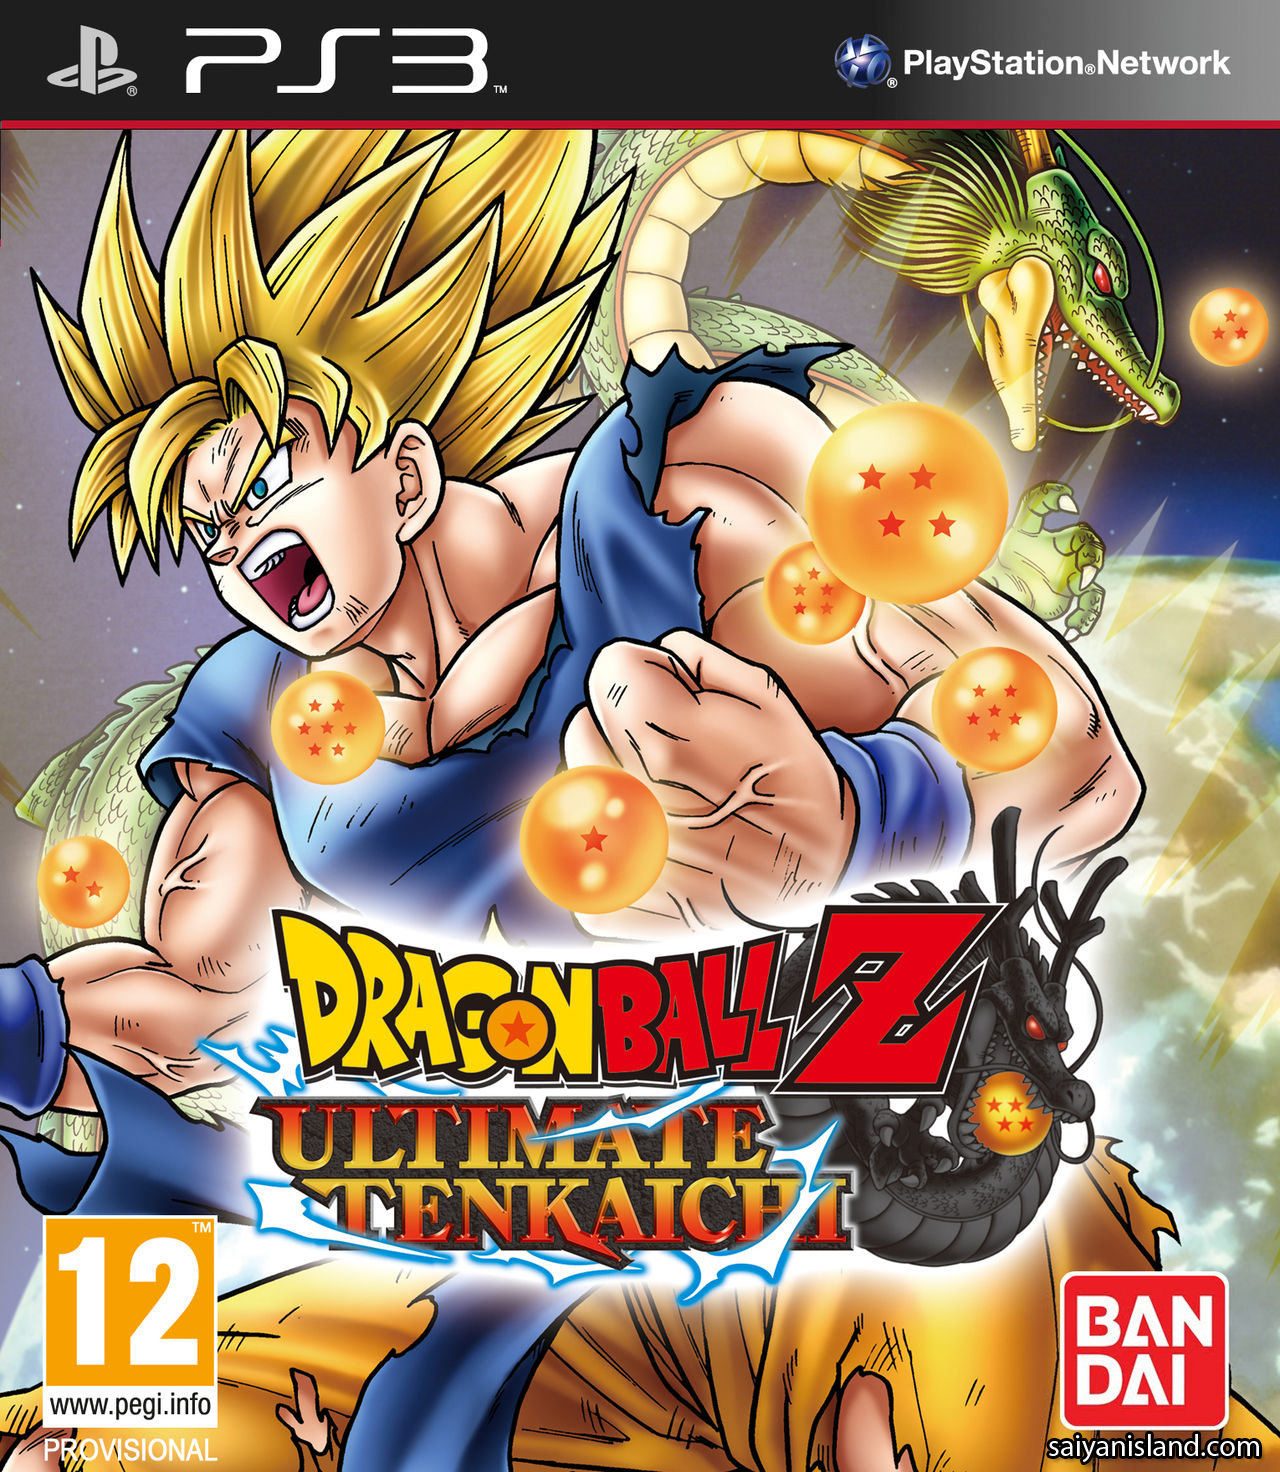 Dragon+ball+z+ultimate+tenkaichi+demo+release